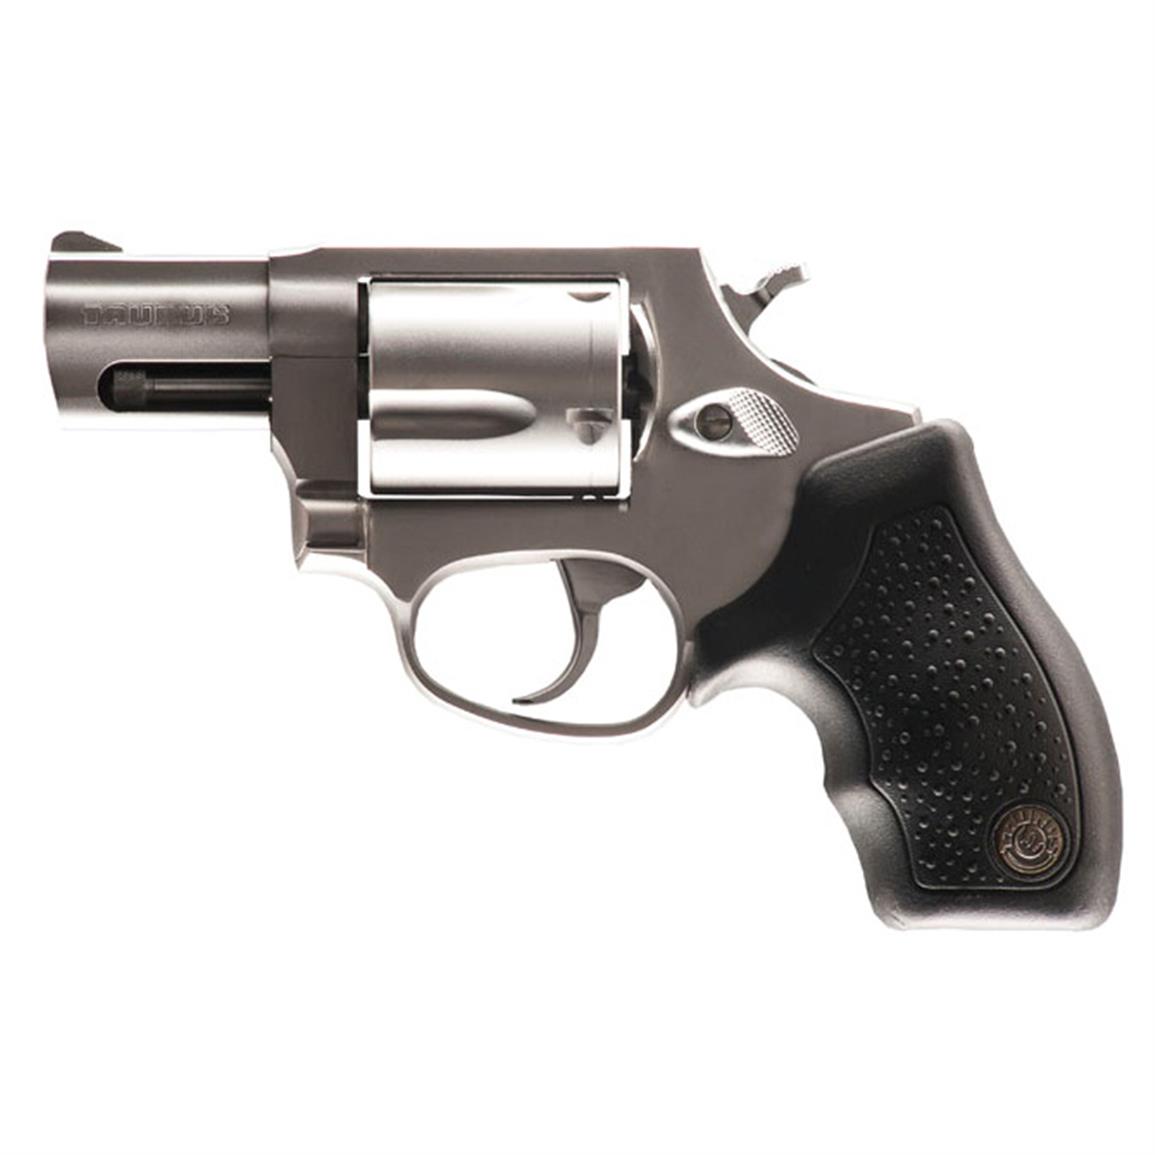 Taurus 605 Revolver 357 Magnum 2605029 725327020302 647254 